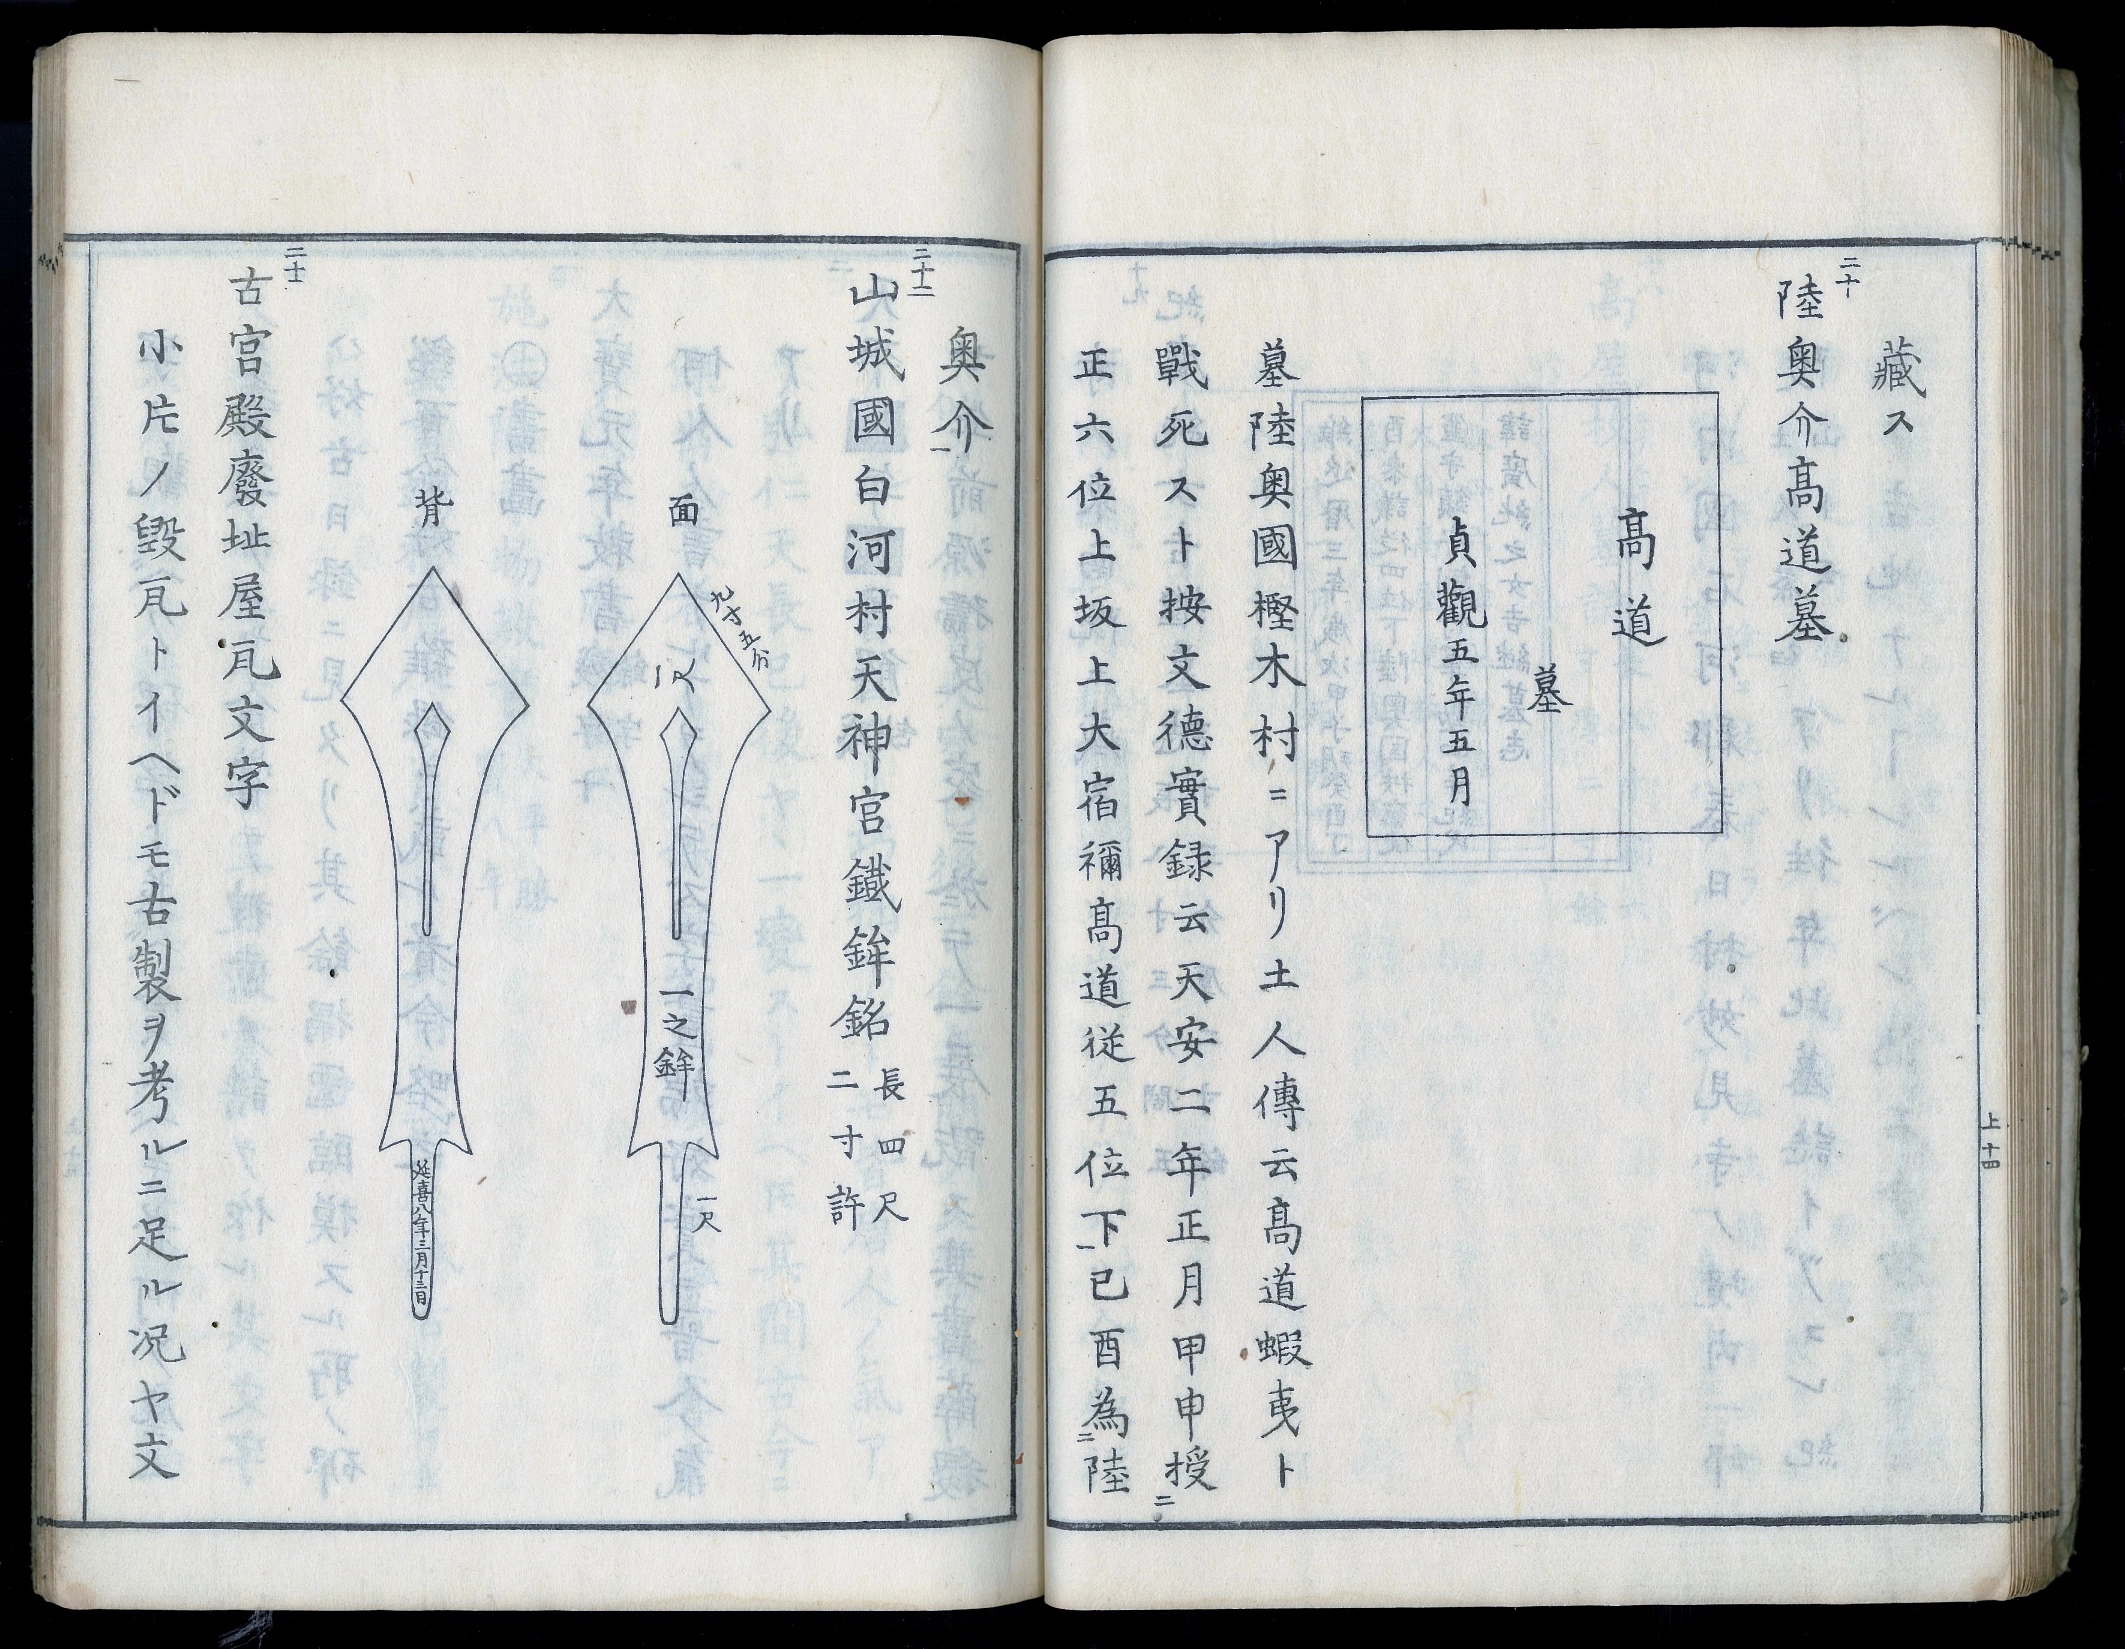 『好古小録』寛政7 年(1795) 個人蔵